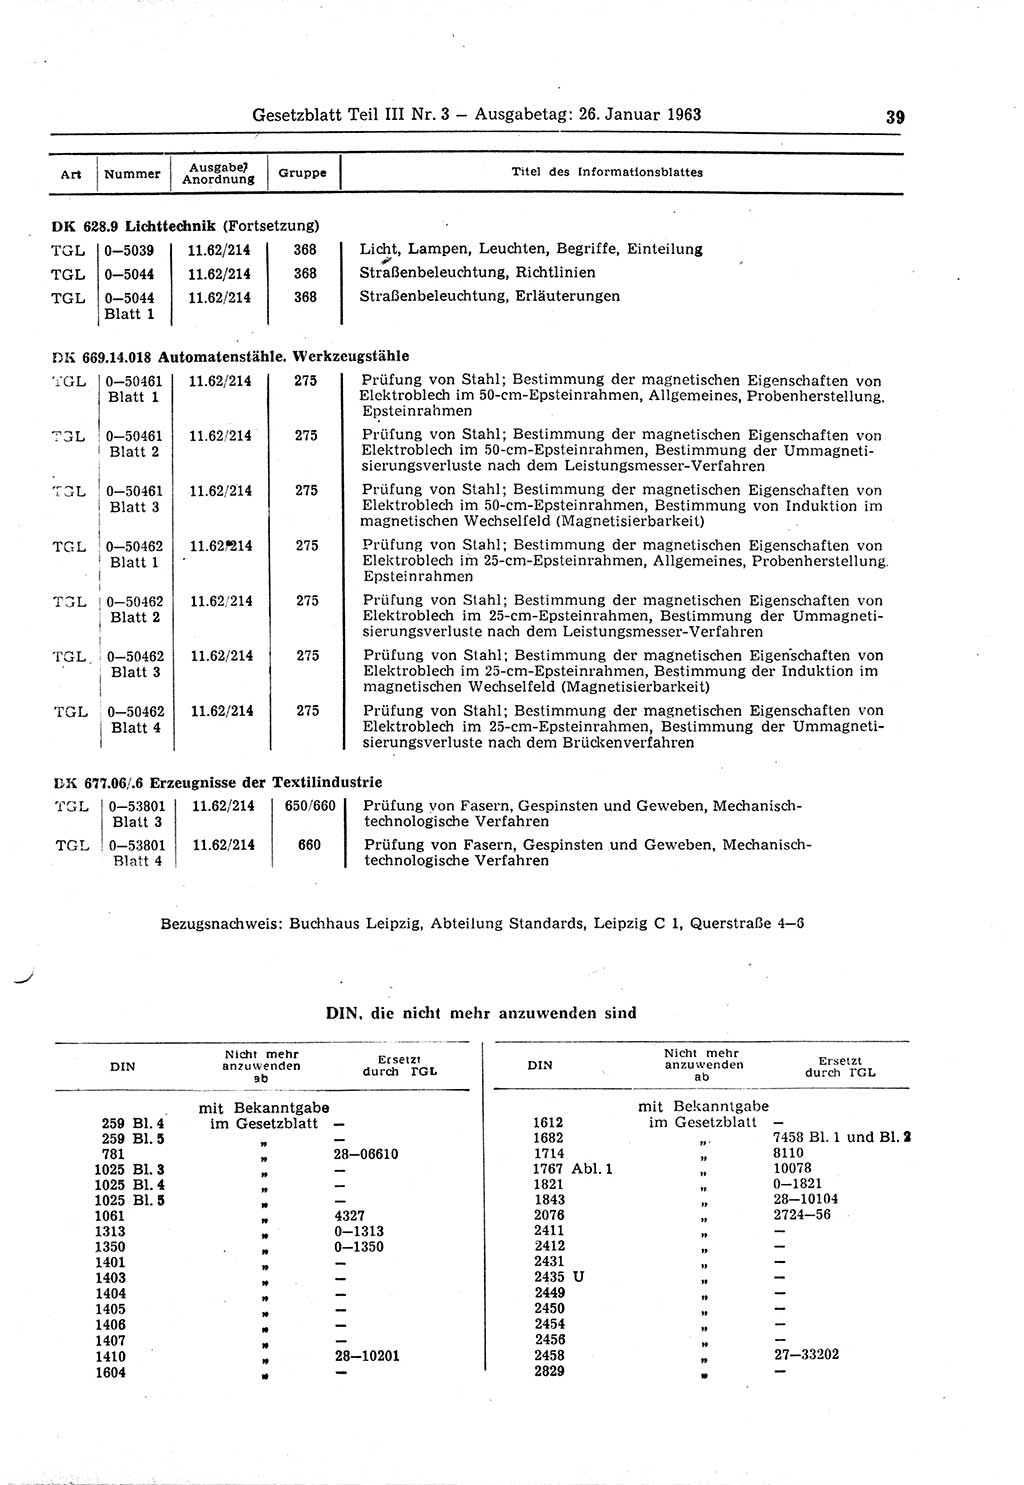 Gesetzblatt (GBl.) der Deutschen Demokratischen Republik (DDR) Teil ⅠⅠⅠ 1963, Seite 39 (GBl. DDR ⅠⅠⅠ 1963, S. 39)